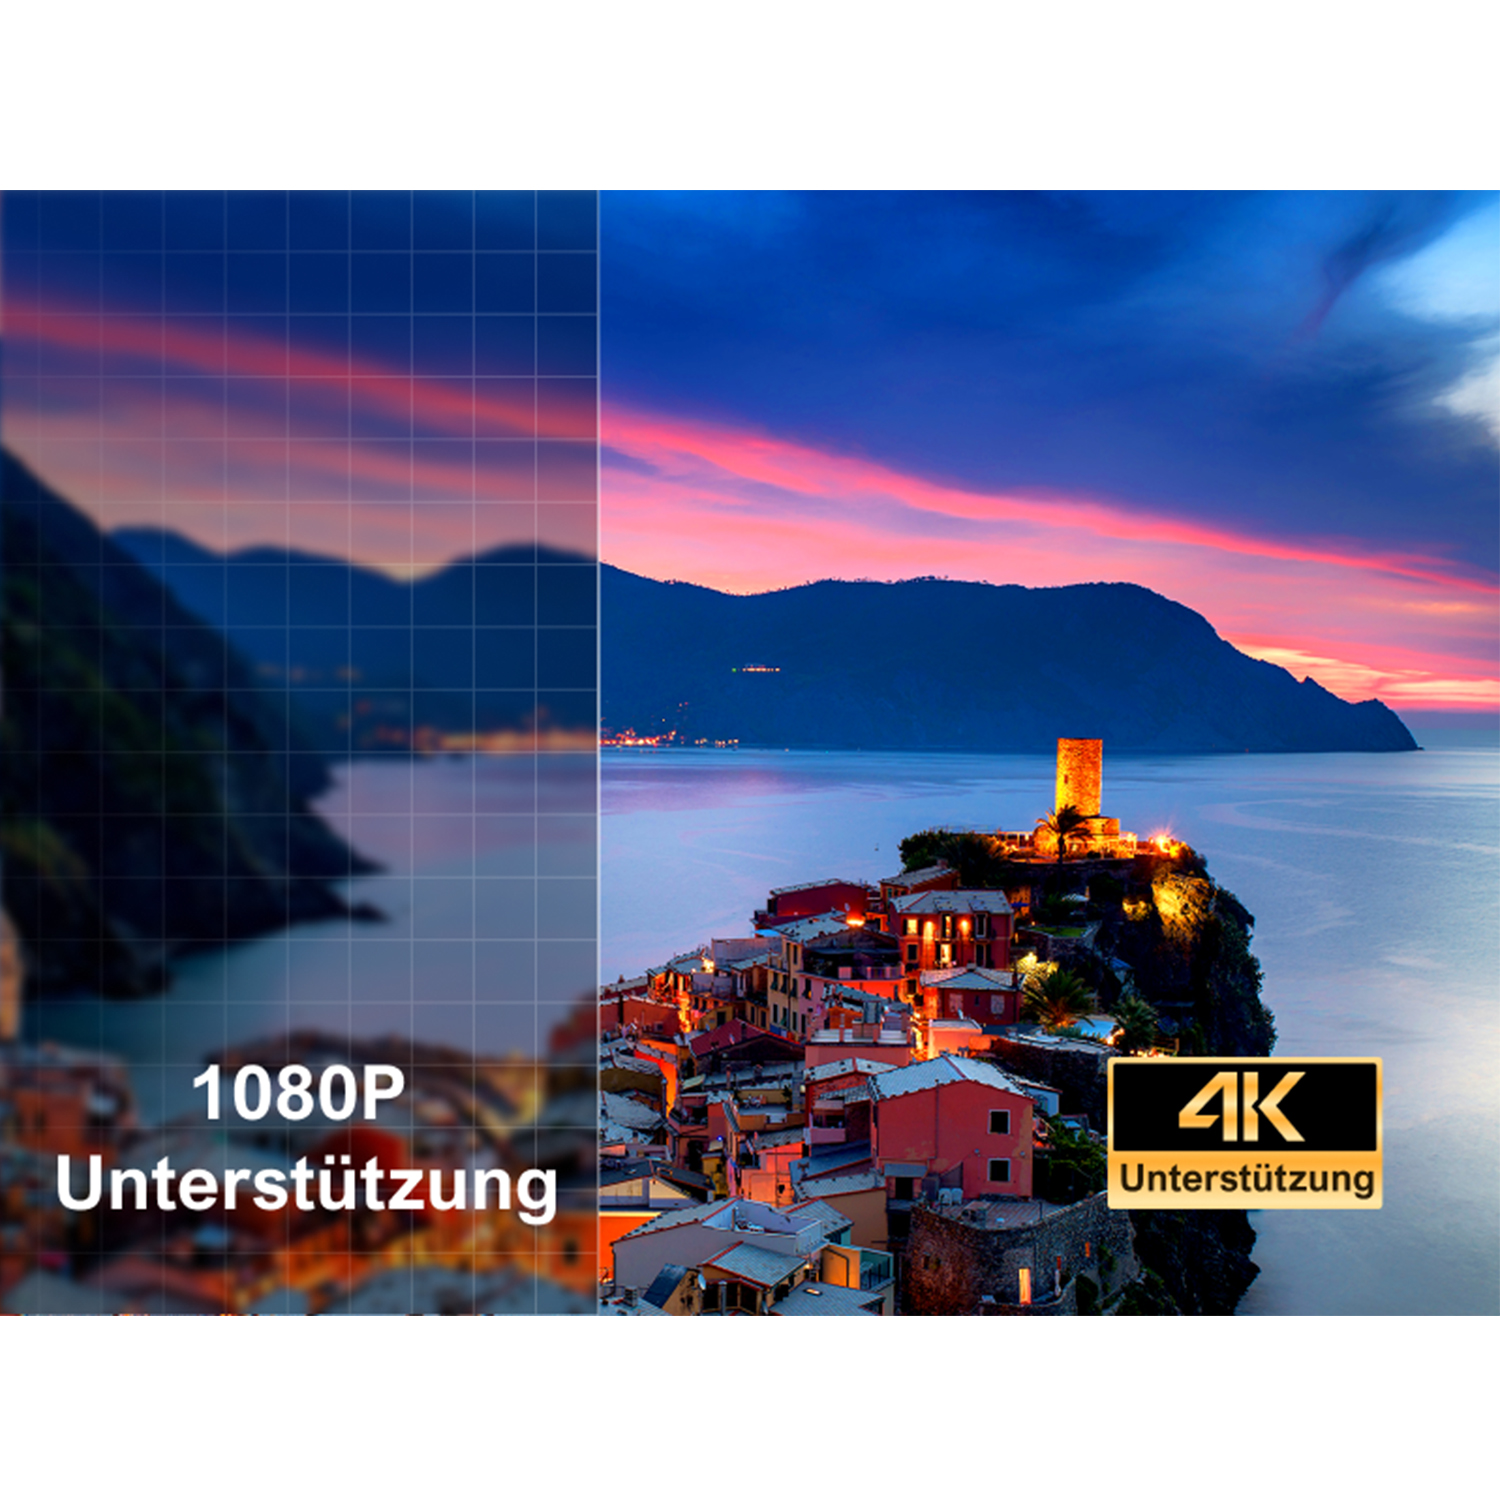 ULTIMEA P60 Beamer 1080P ANSI-Lumen) Beamer(Full-HD, Native Heimkino 6D mit Hindernisvermeidung 900 Autofokus und , Autotrapezkorrektur,4K